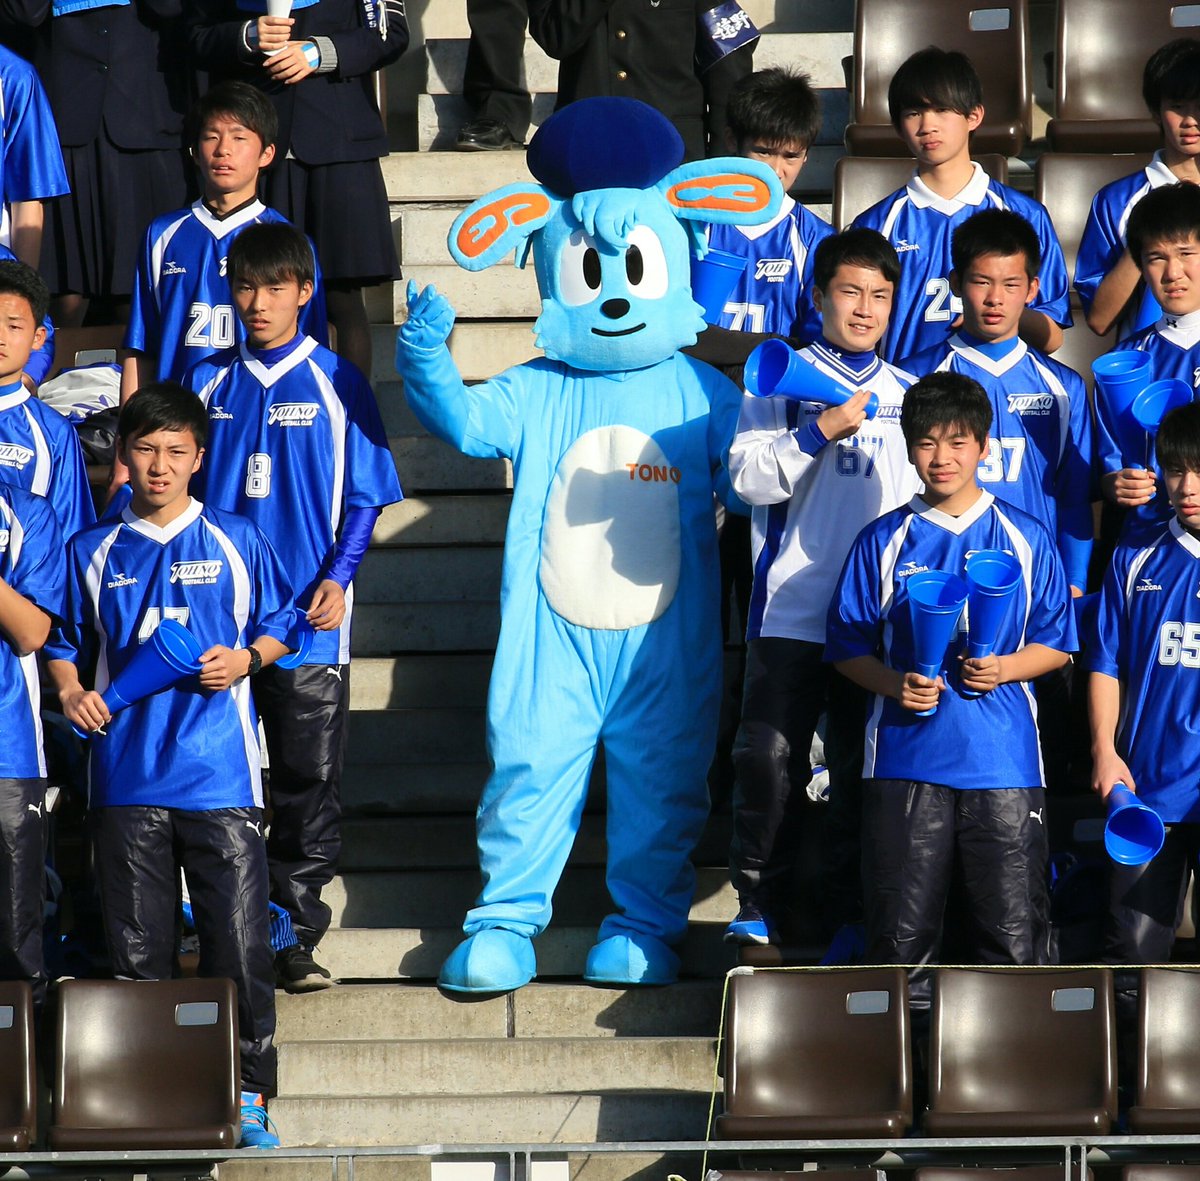 Twitter पर R 遠野高校の応援席にいた着ぐるみが気になって試合に集中できなかった Kajo Kun というマスコットらしい 高校サッカー 遠野高校